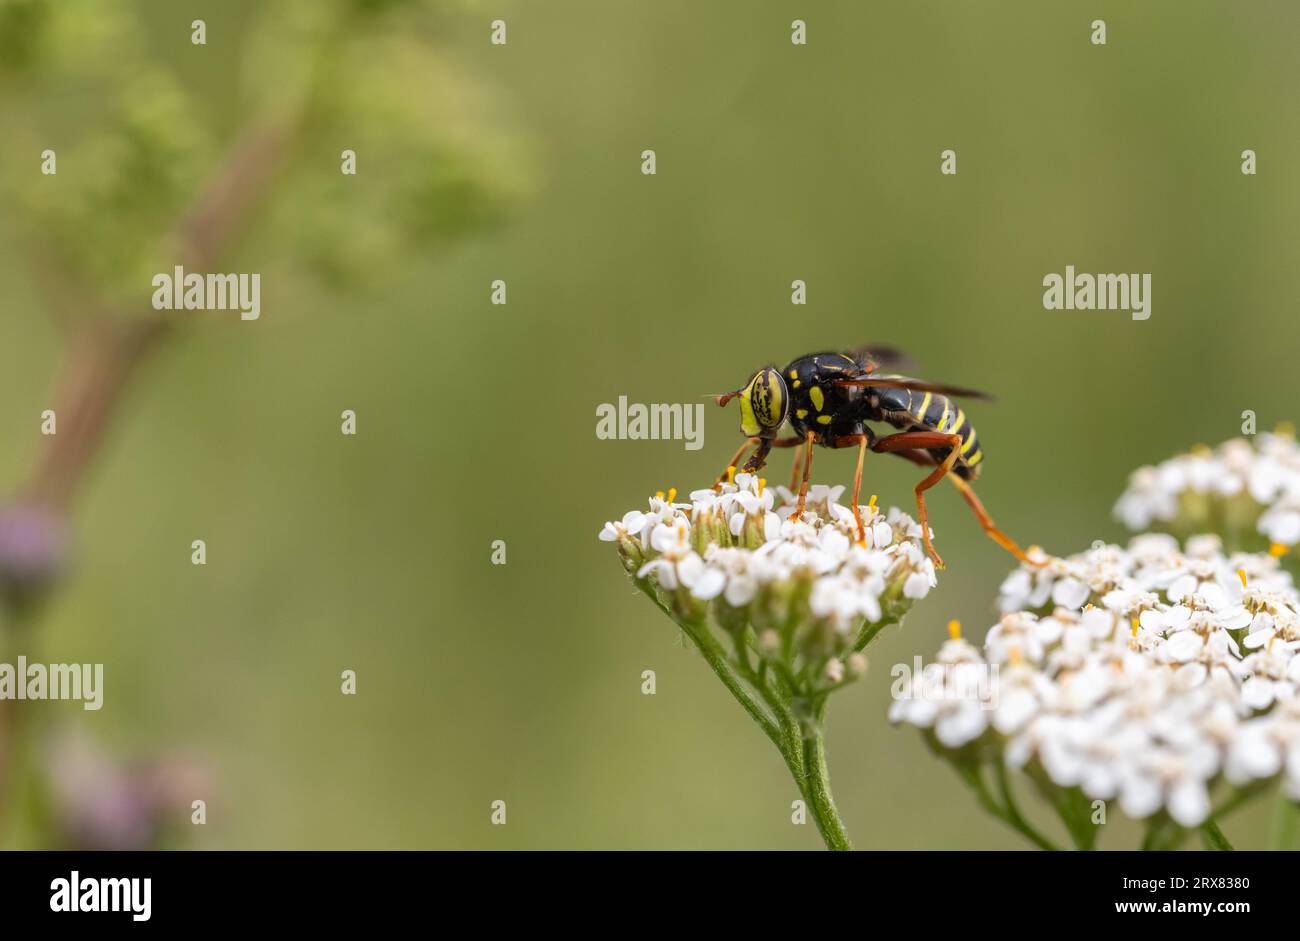 Wasp mimic hoverfly Stock Photo